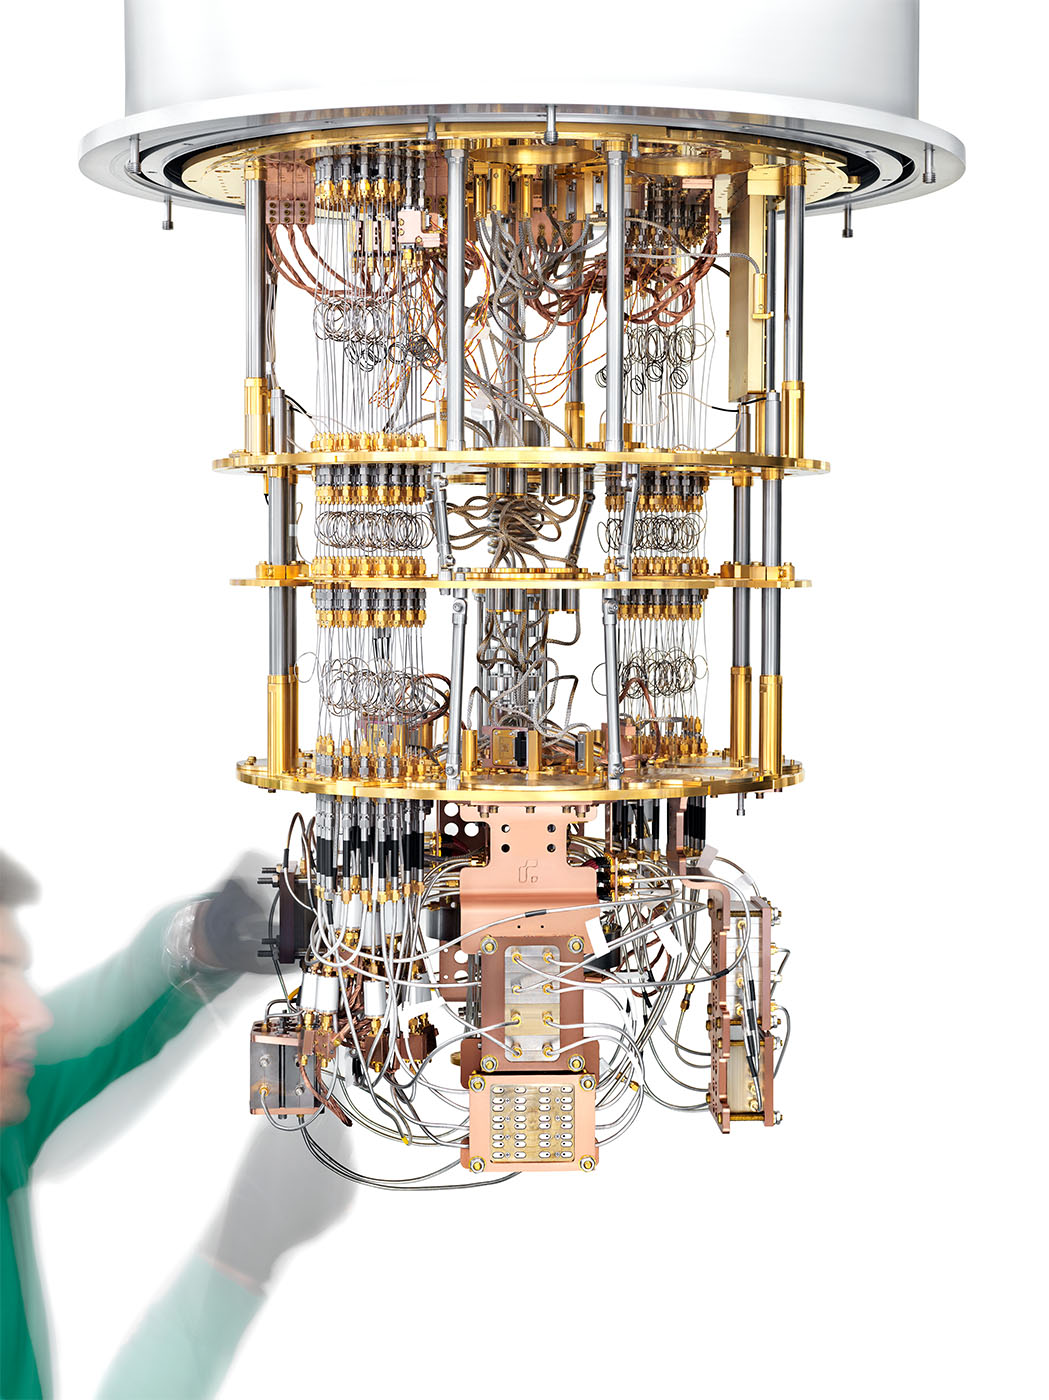 Picture of Rigetti quantum computer hardware